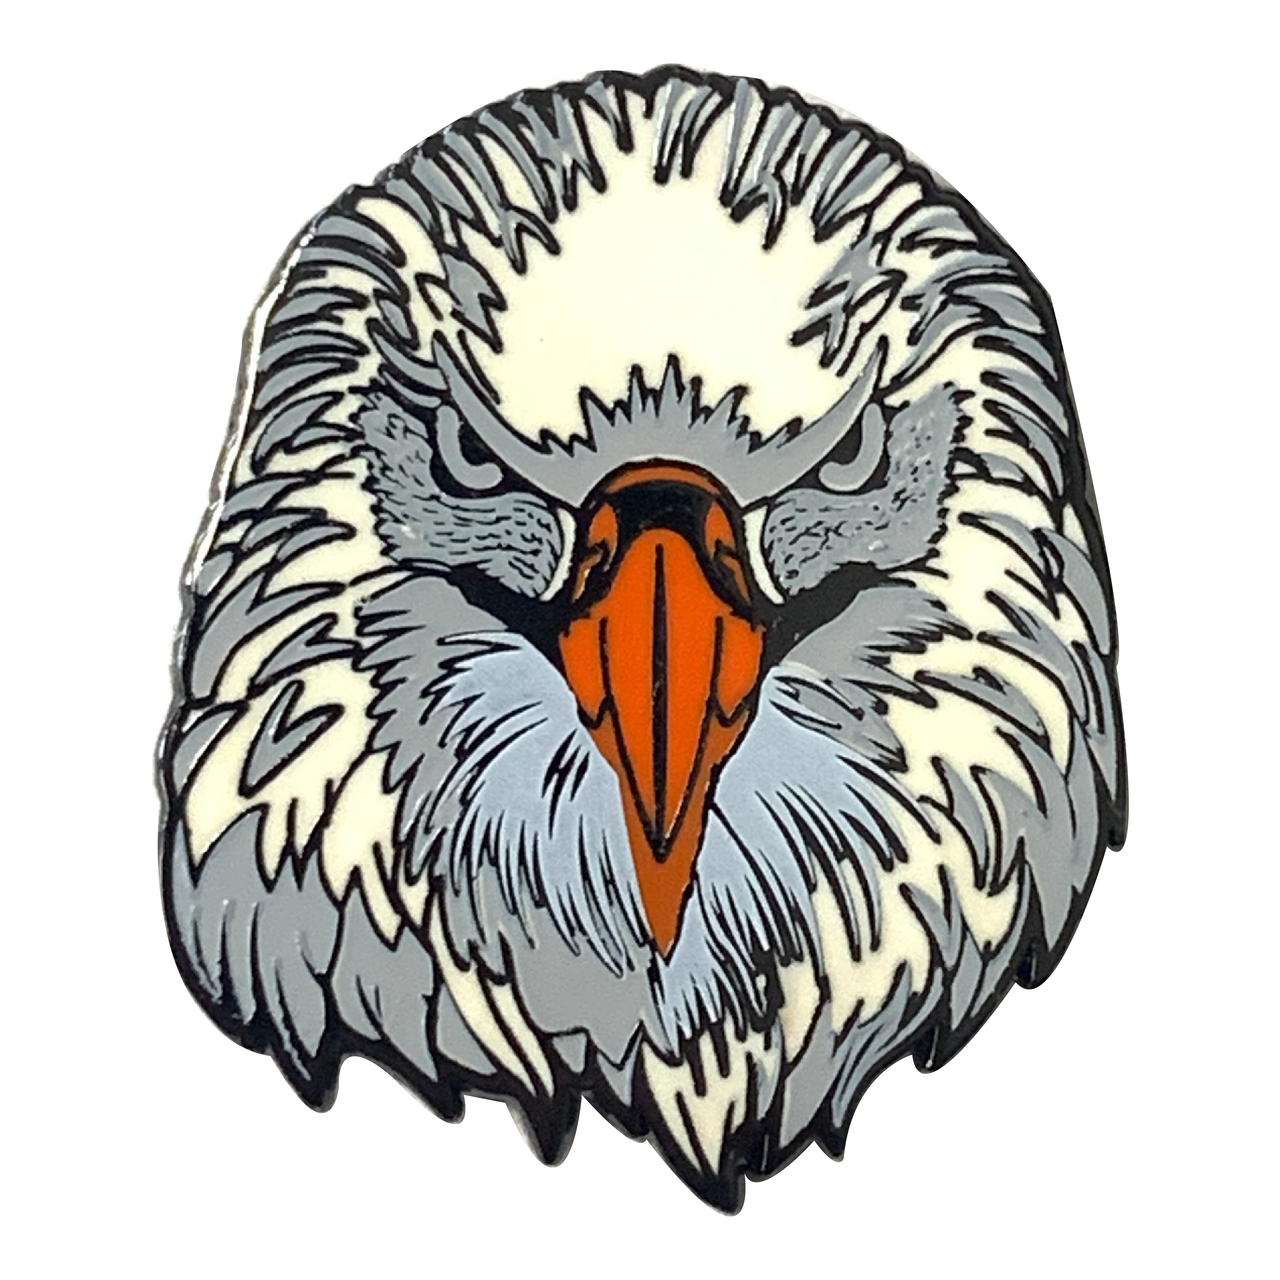 eagle head cartoon drawing